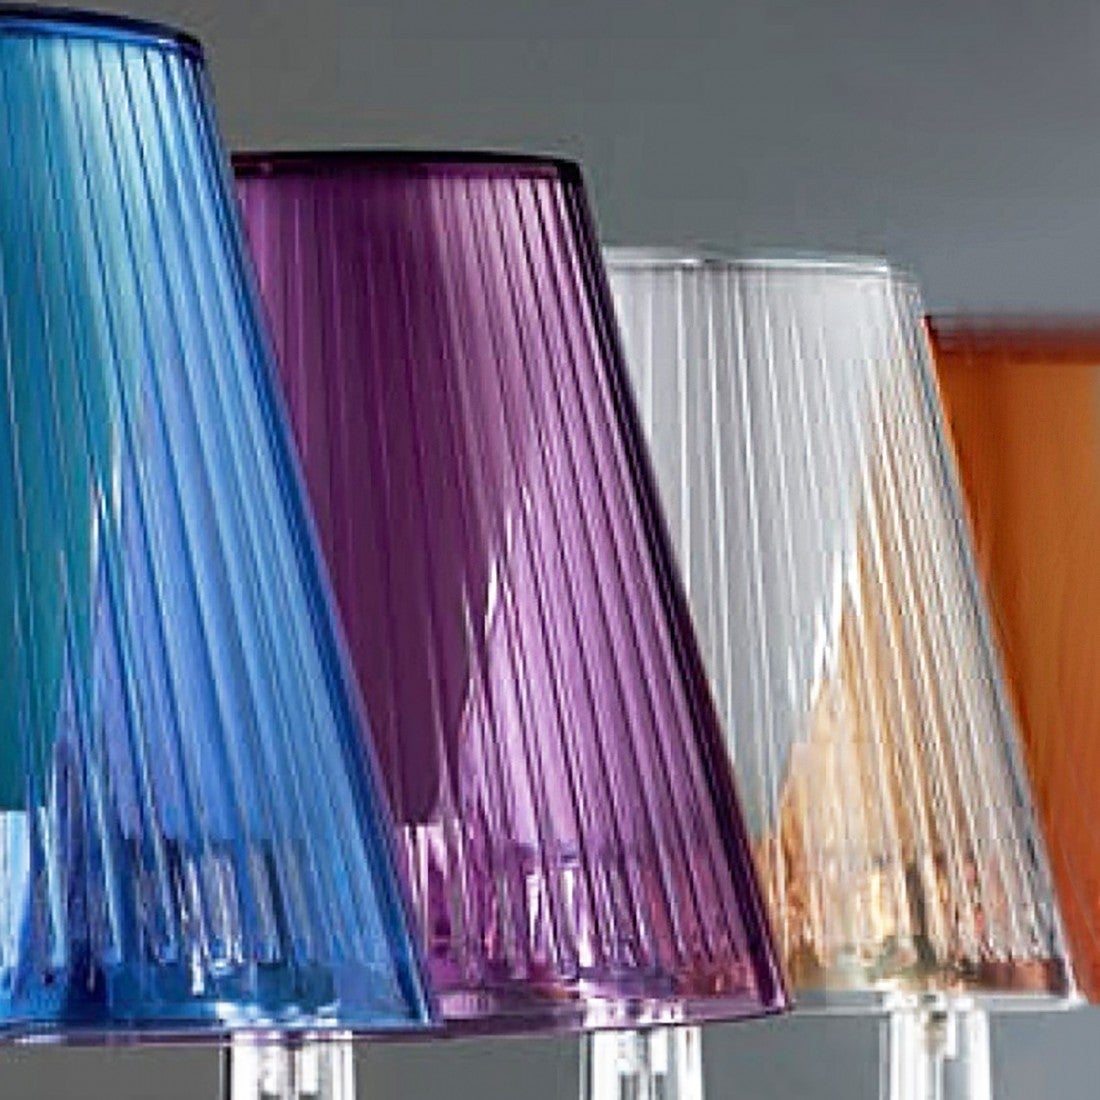 Lampada da tavolo in vetro colorato moderna con attacco E27 LED IP20.